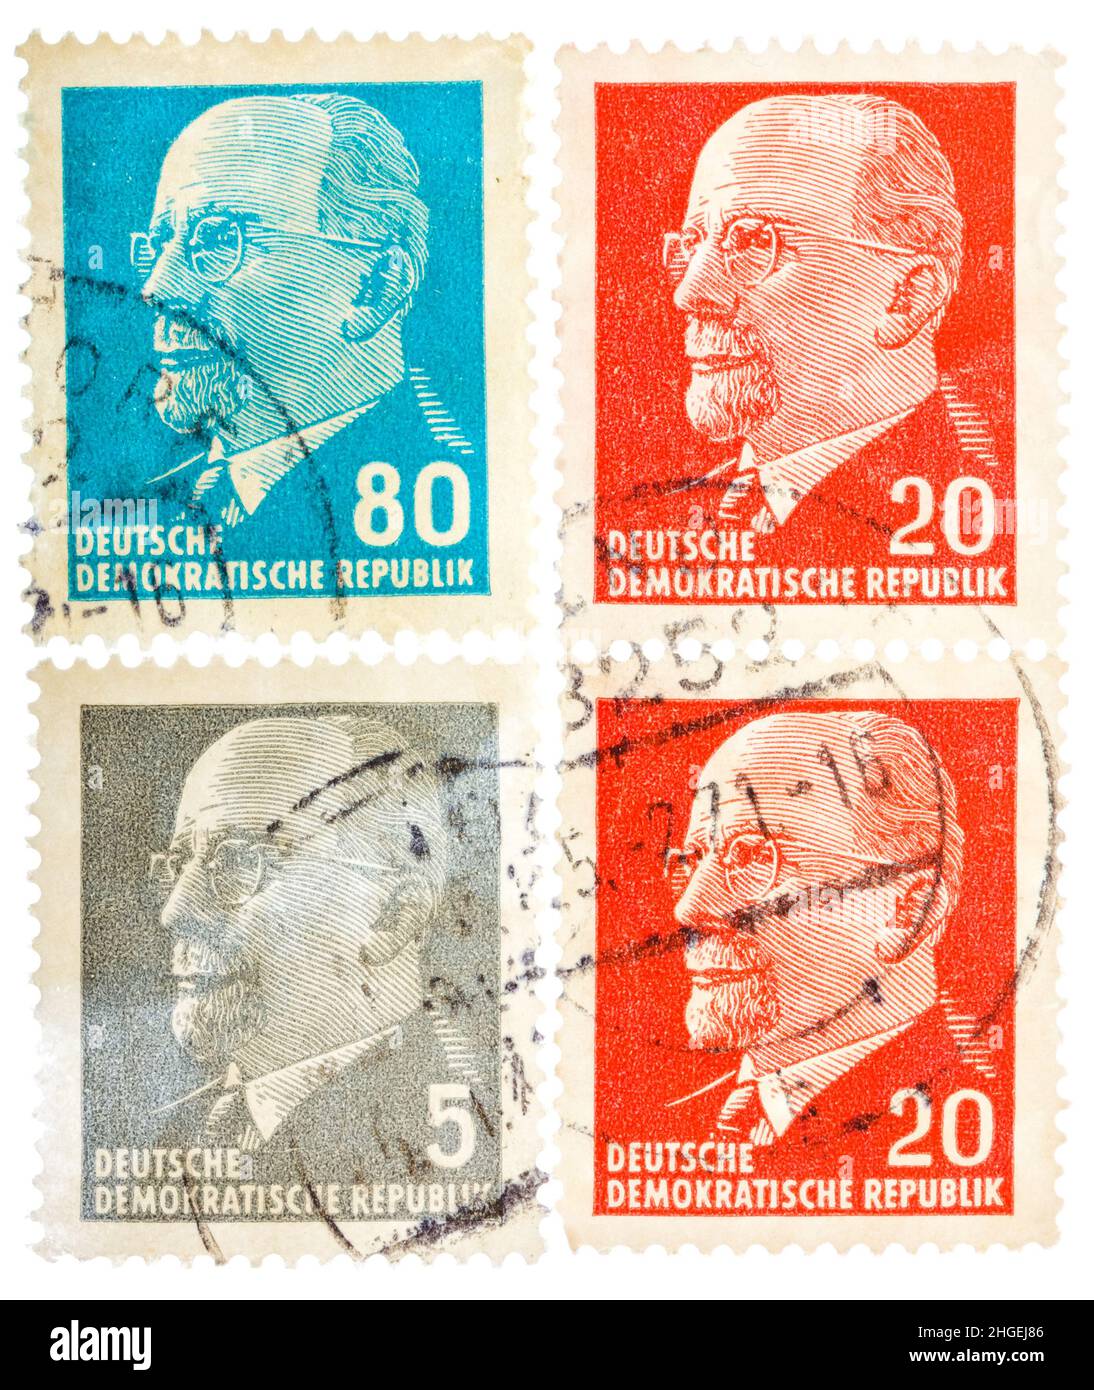 Postkarte in der BRD zeigt Porträt Walter Ulbricht - deutscher kommunistischer Politiker Stockfoto